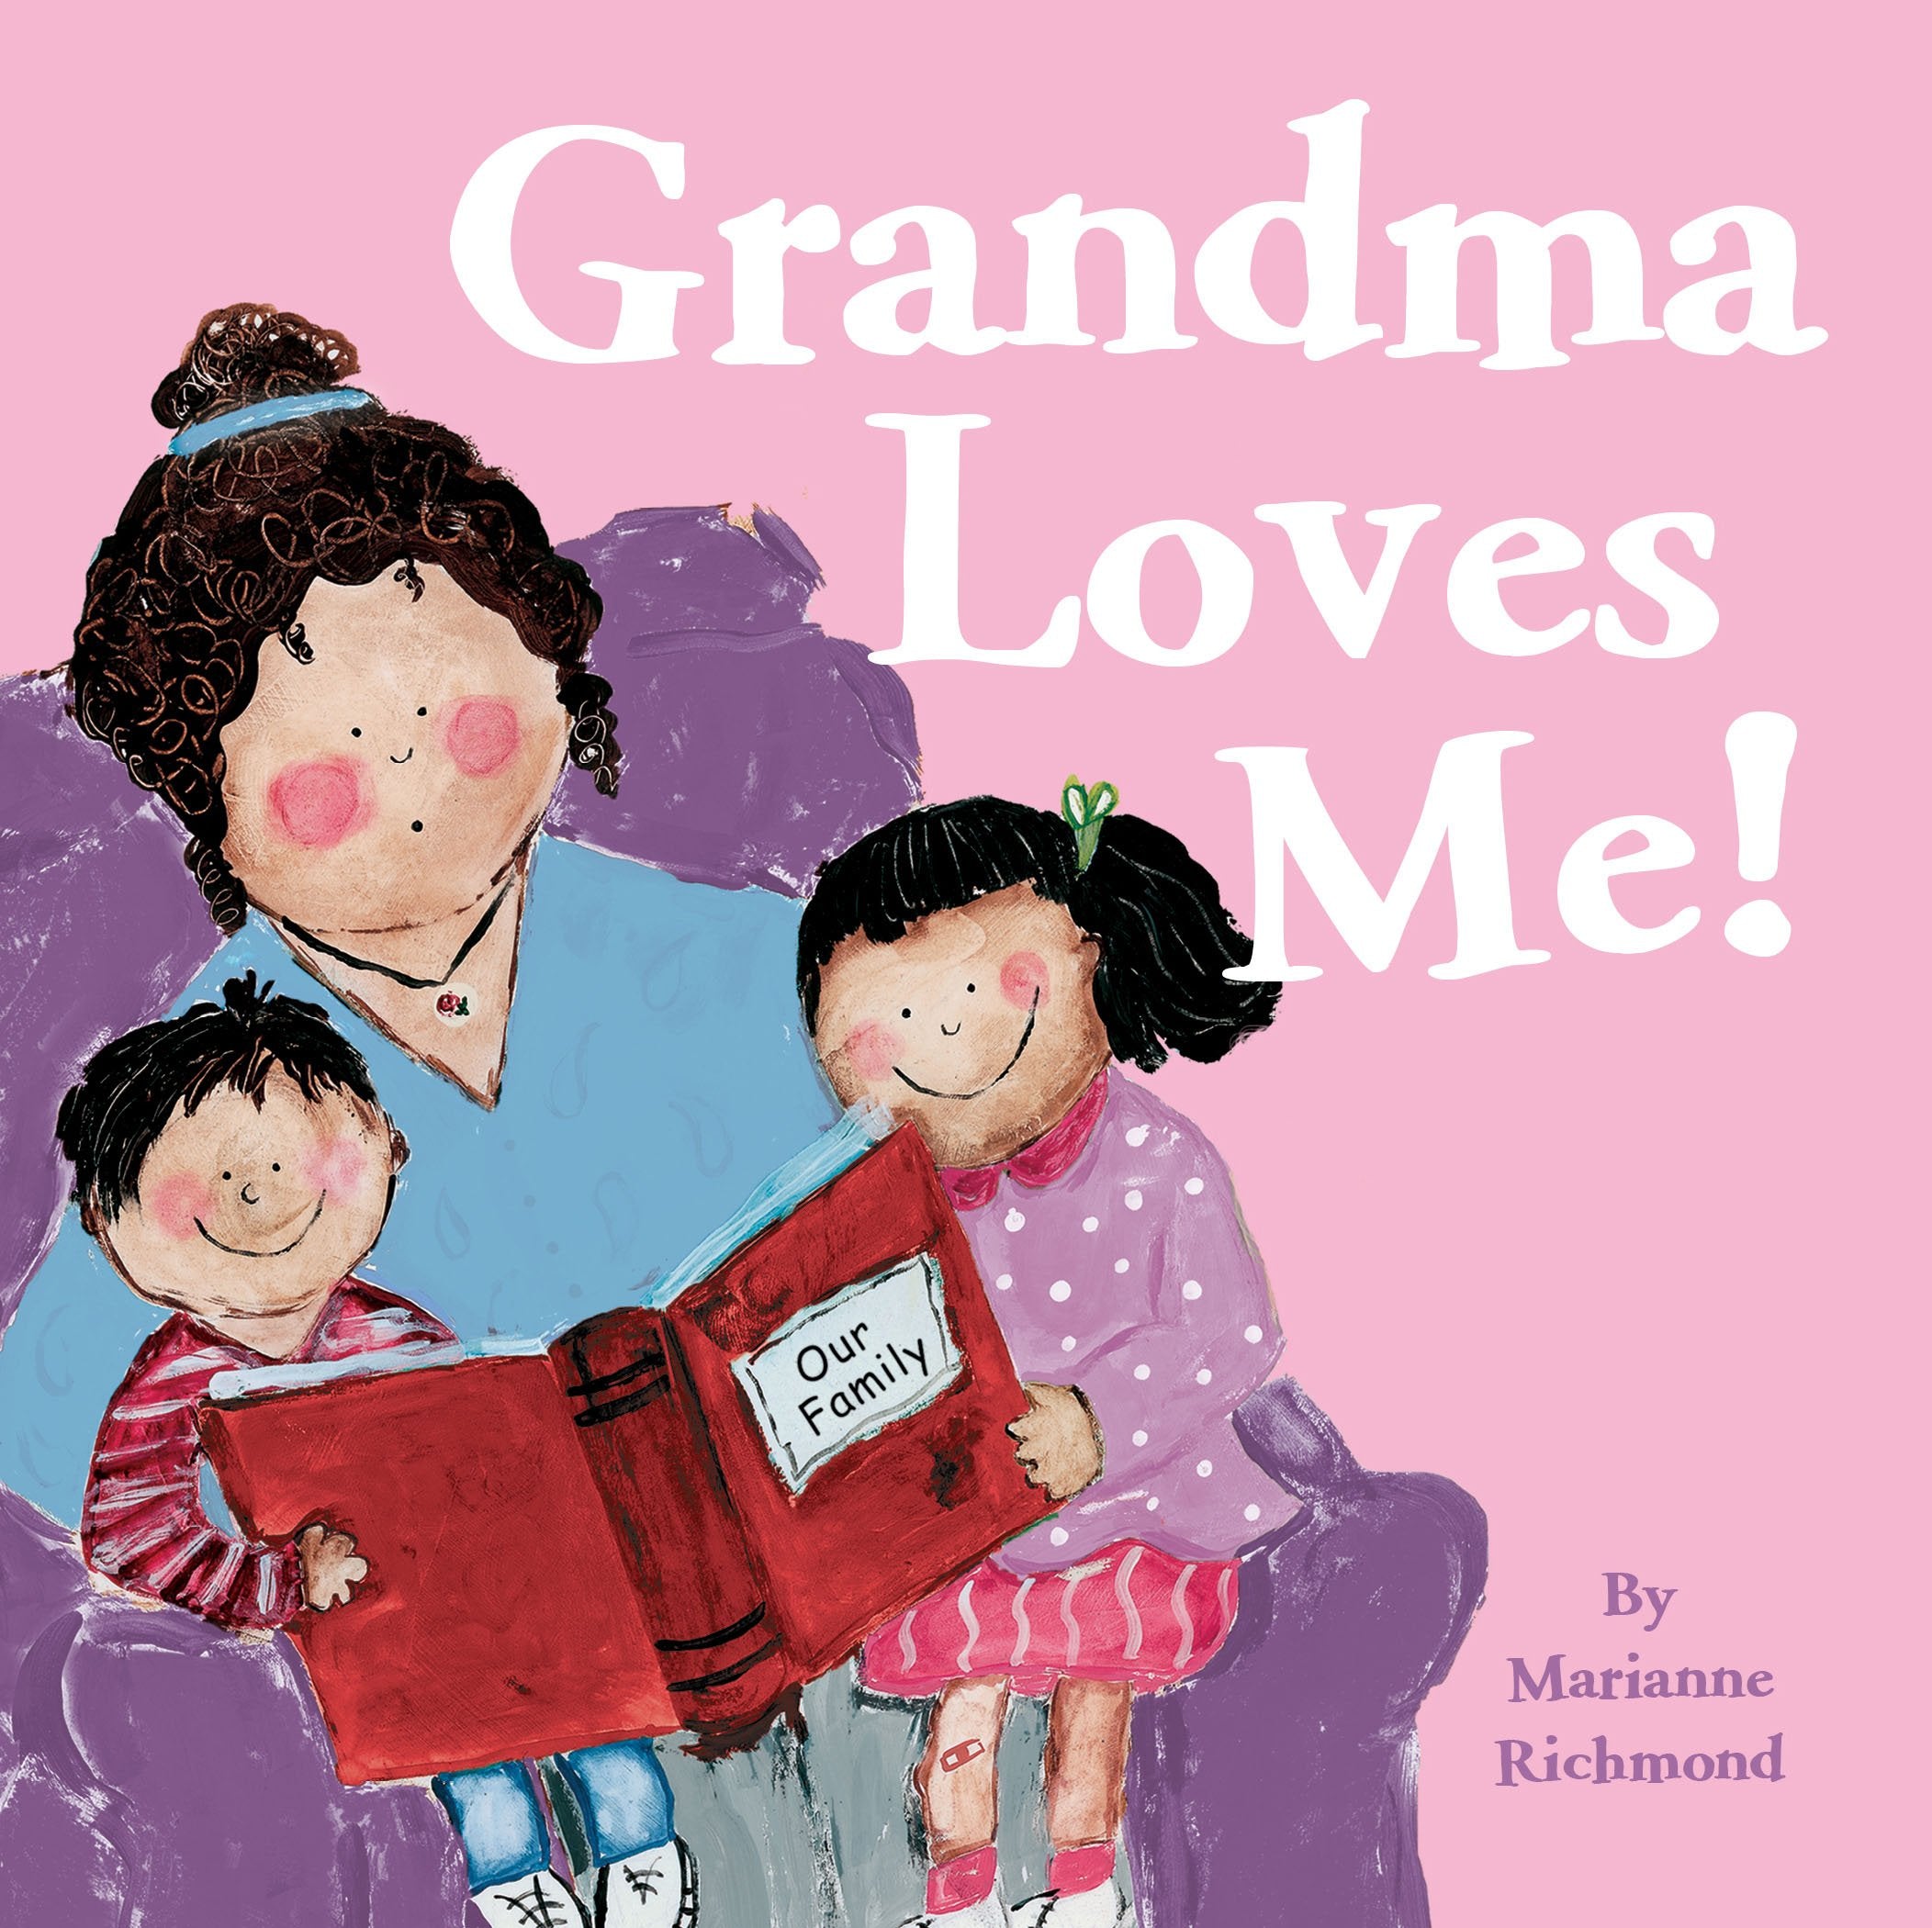 “Grandma Loves Me” by Marianne Richmond